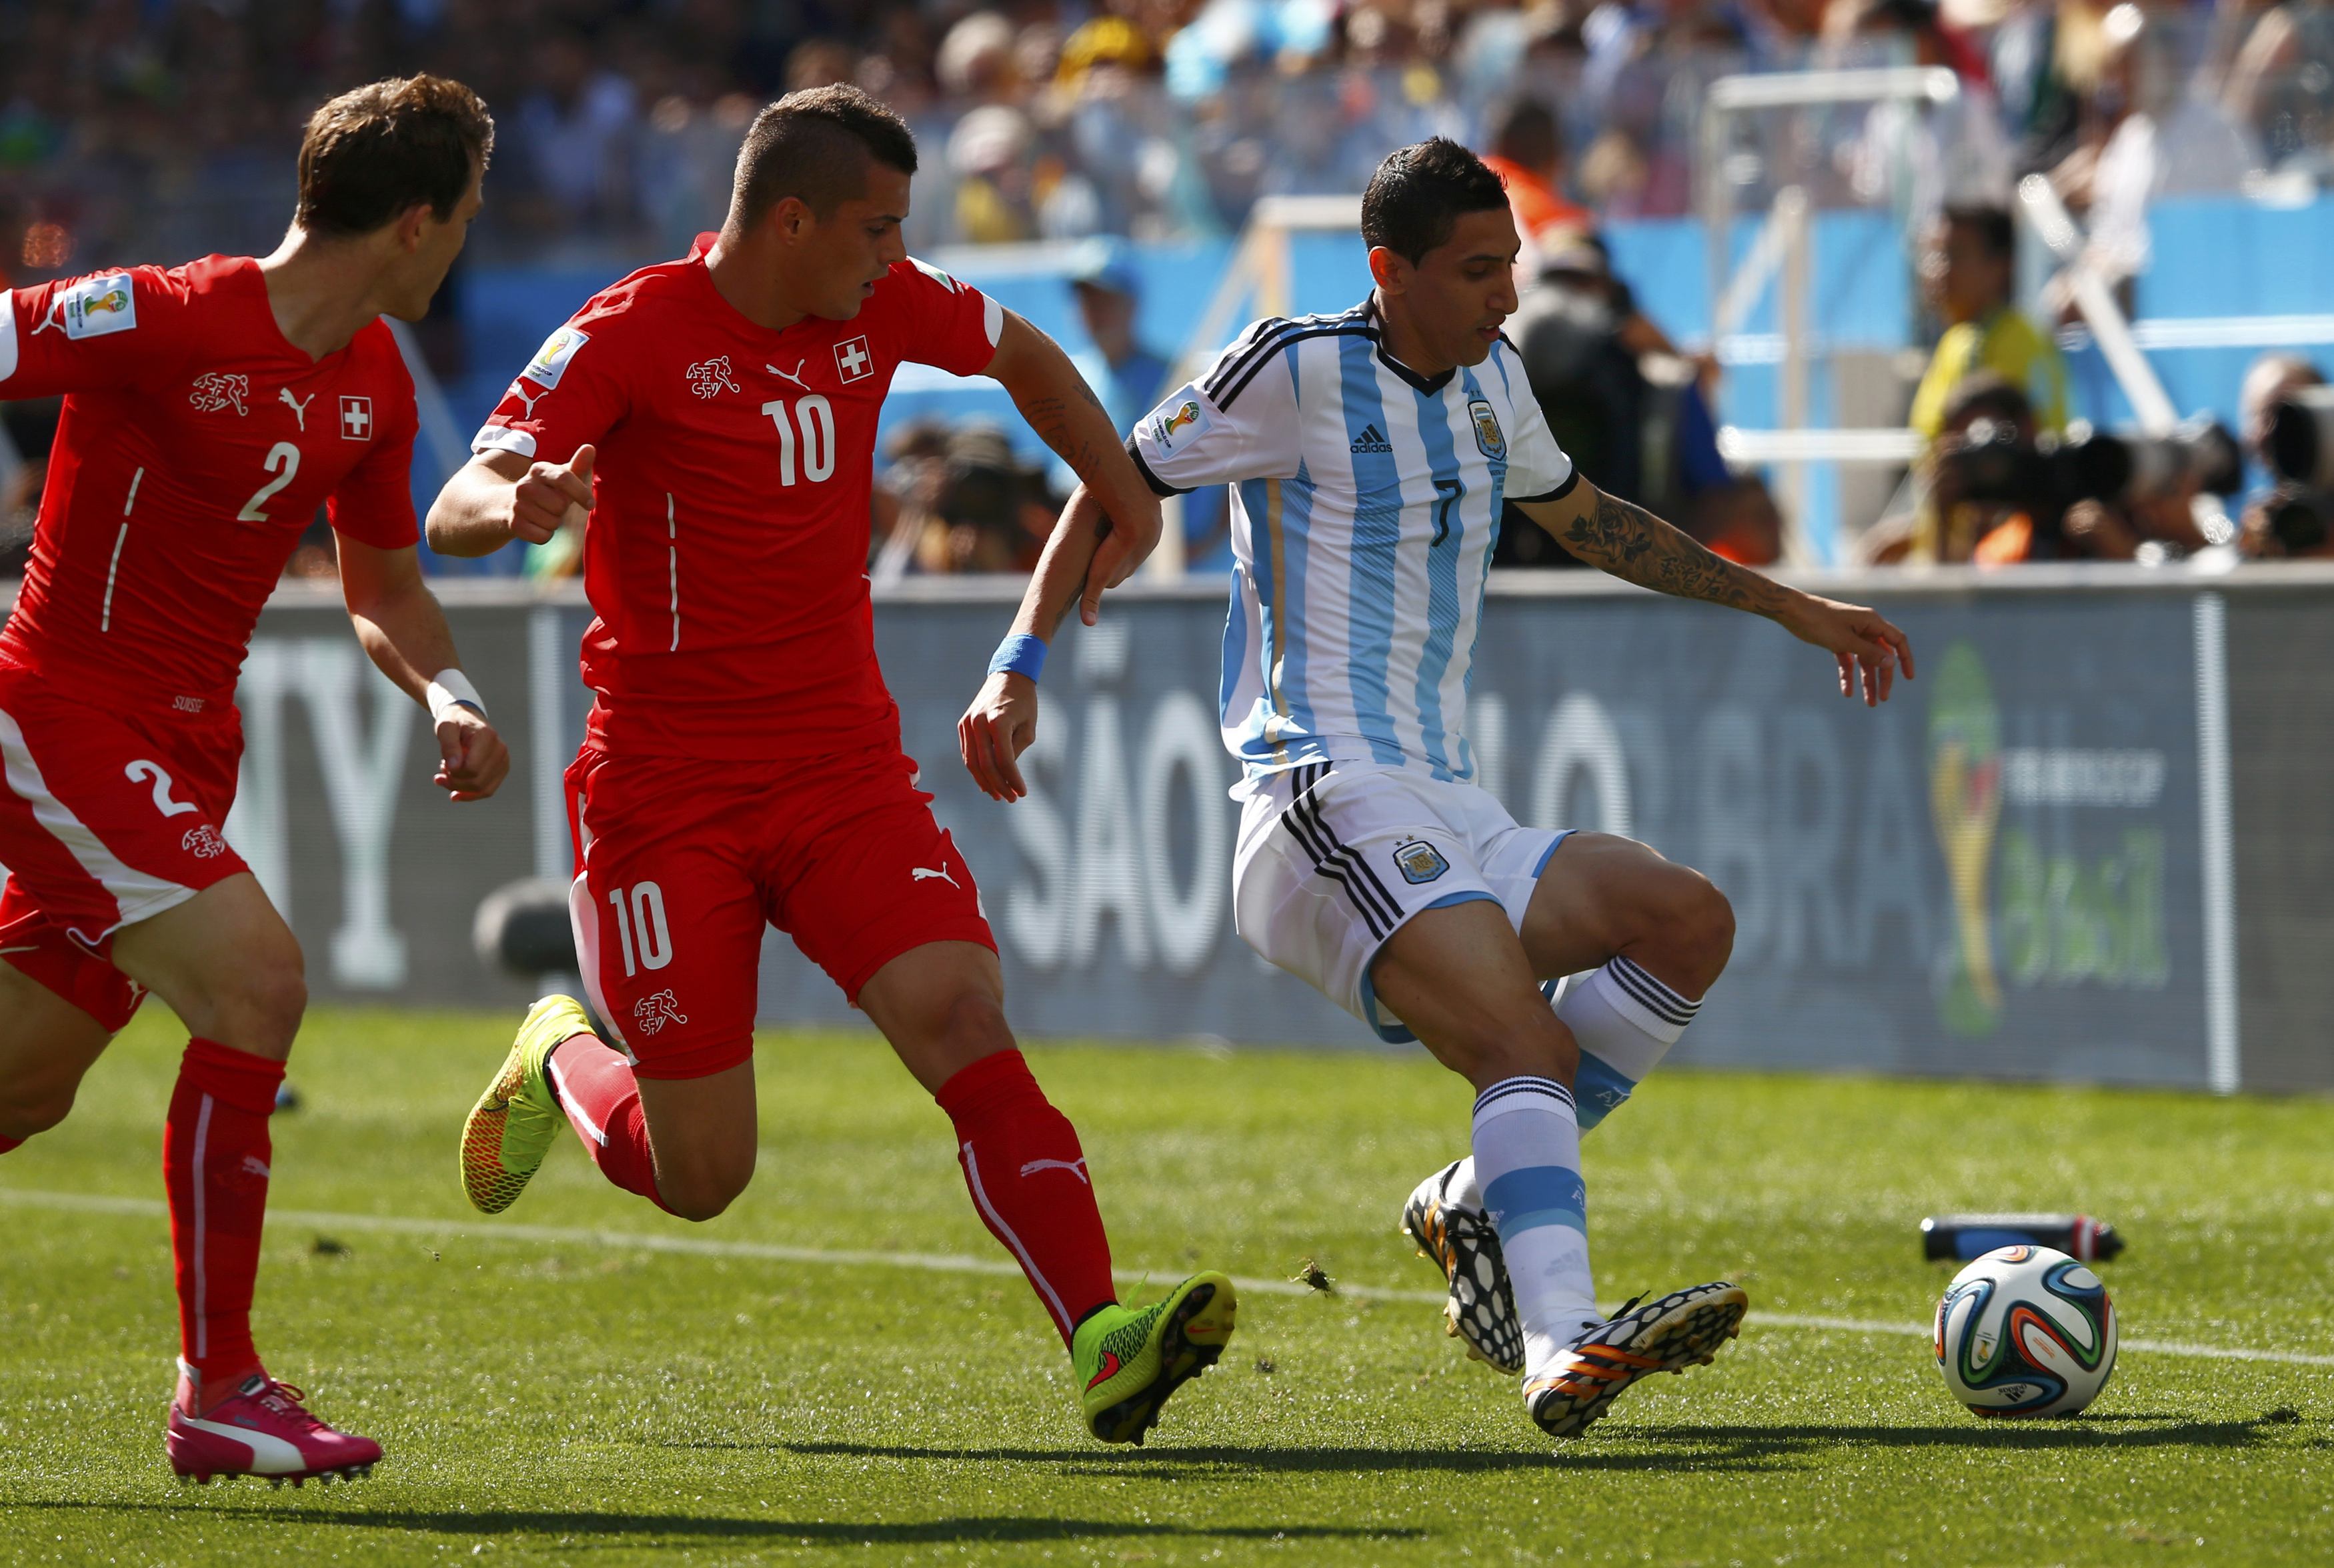 Argentina pasa a cuartos de final tras ganar a Suiza en la prórroga 1-0